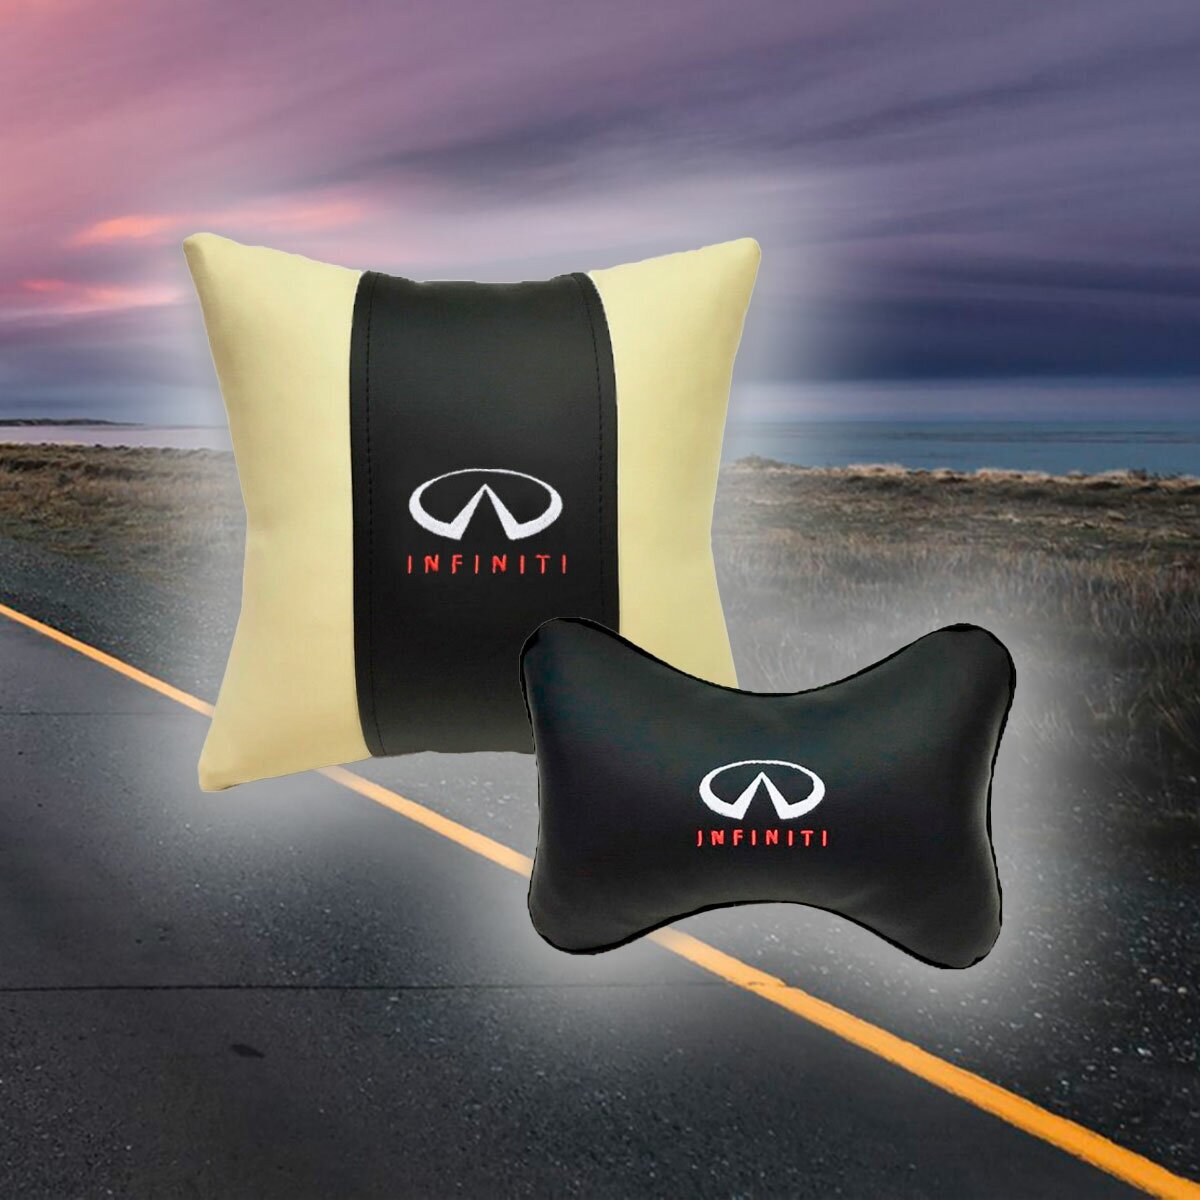 Комплект автомобильных подушек из экокожи и вышивкой для Infiniti (инфинити) (подушка на подголовник и автомобильная подушка)